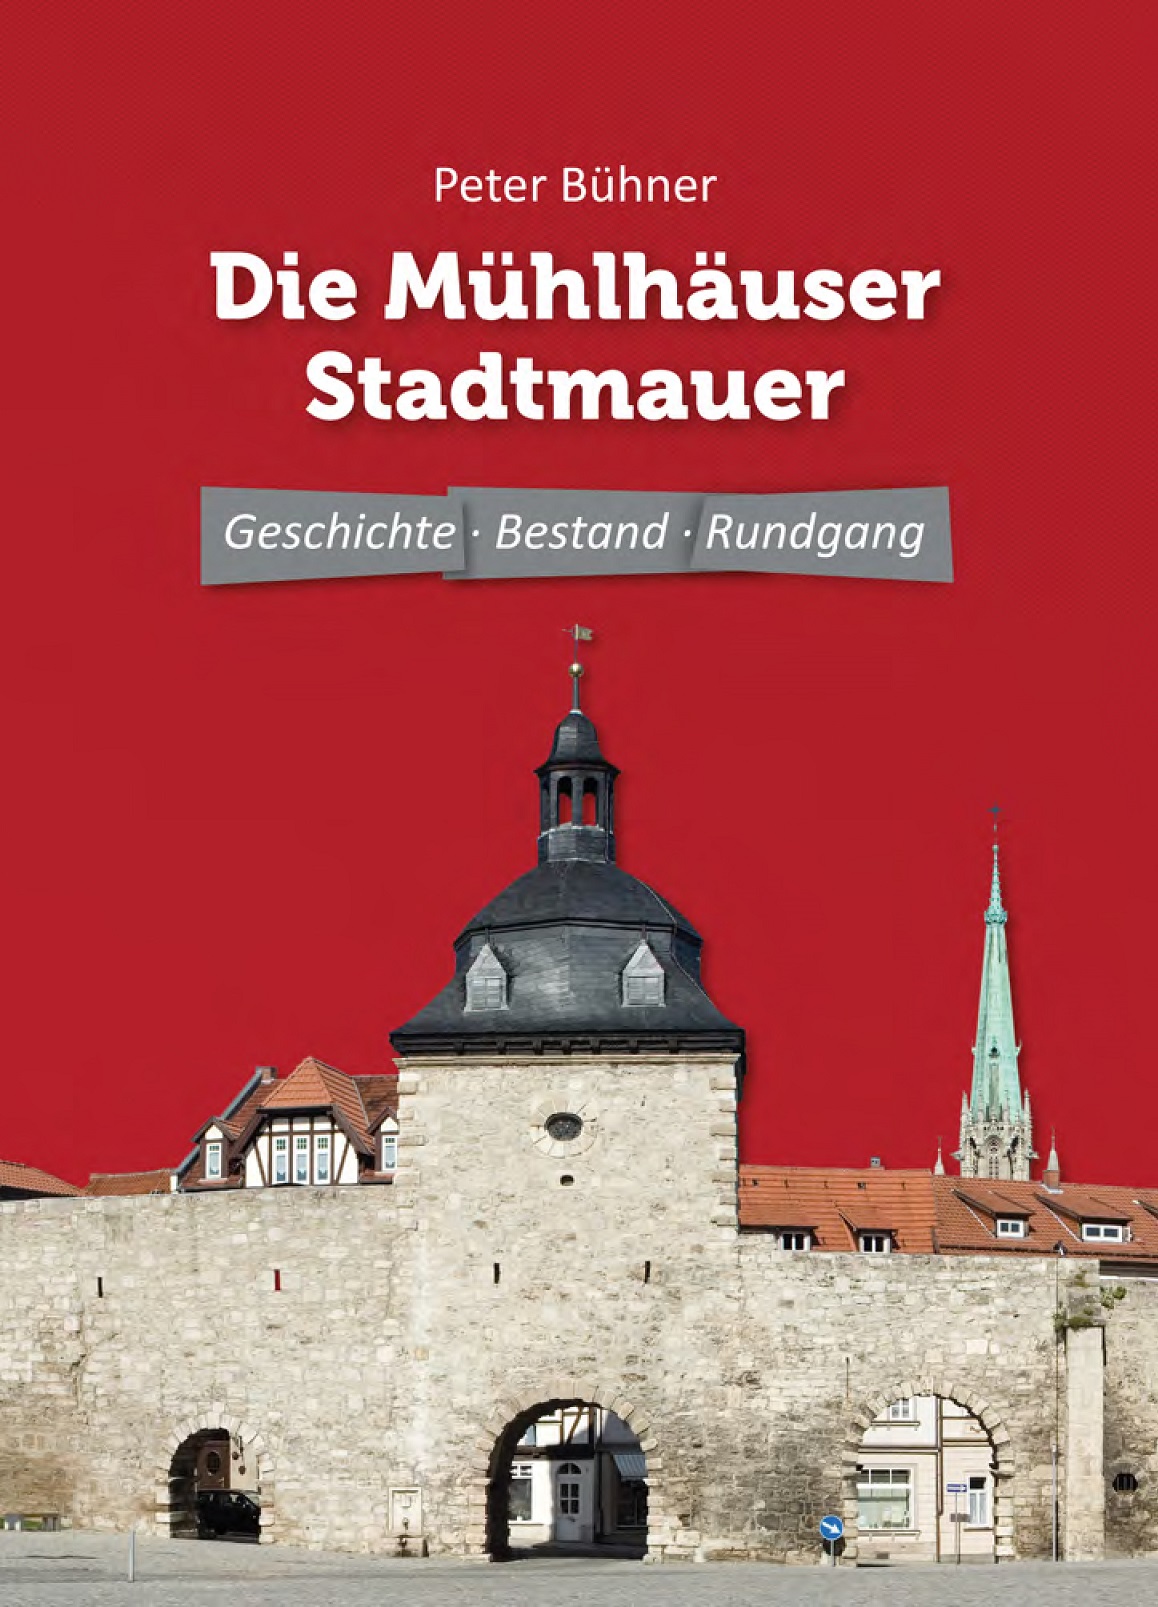 Peter Bühner: Die Mühlhäuser Stadtmauer